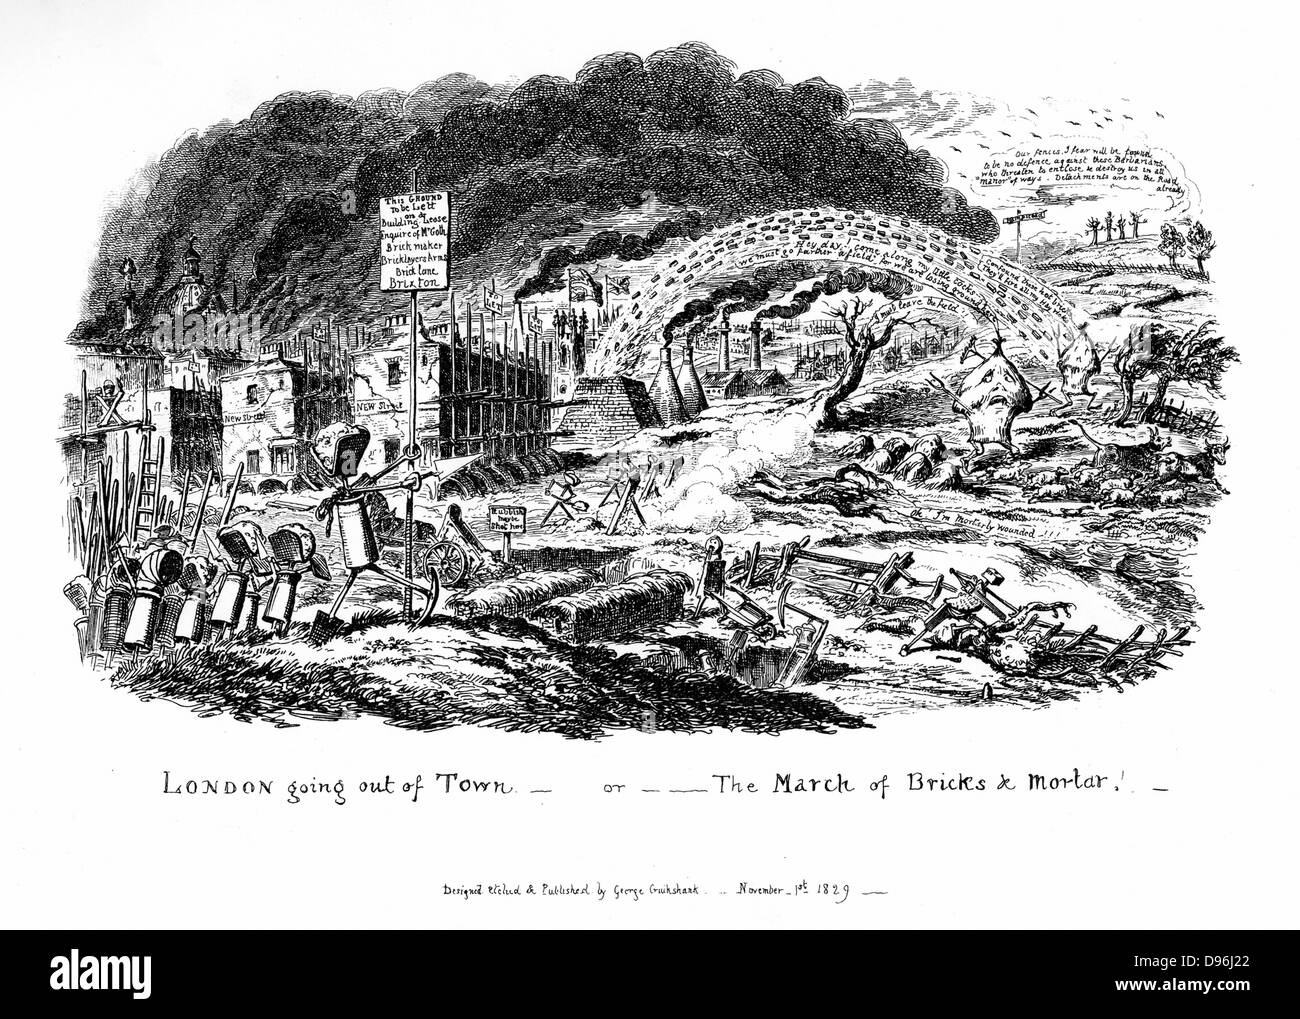 Londra andando fuori città - o il marzo di mattoni e malta di calce'. Un attacco dal George Cruickshank pubblicata il 1 novembre 1829. Espansione di Londra, mostrando il mangiare del campo verde siti e inquinamento da città e da laterizi. Foto Stock